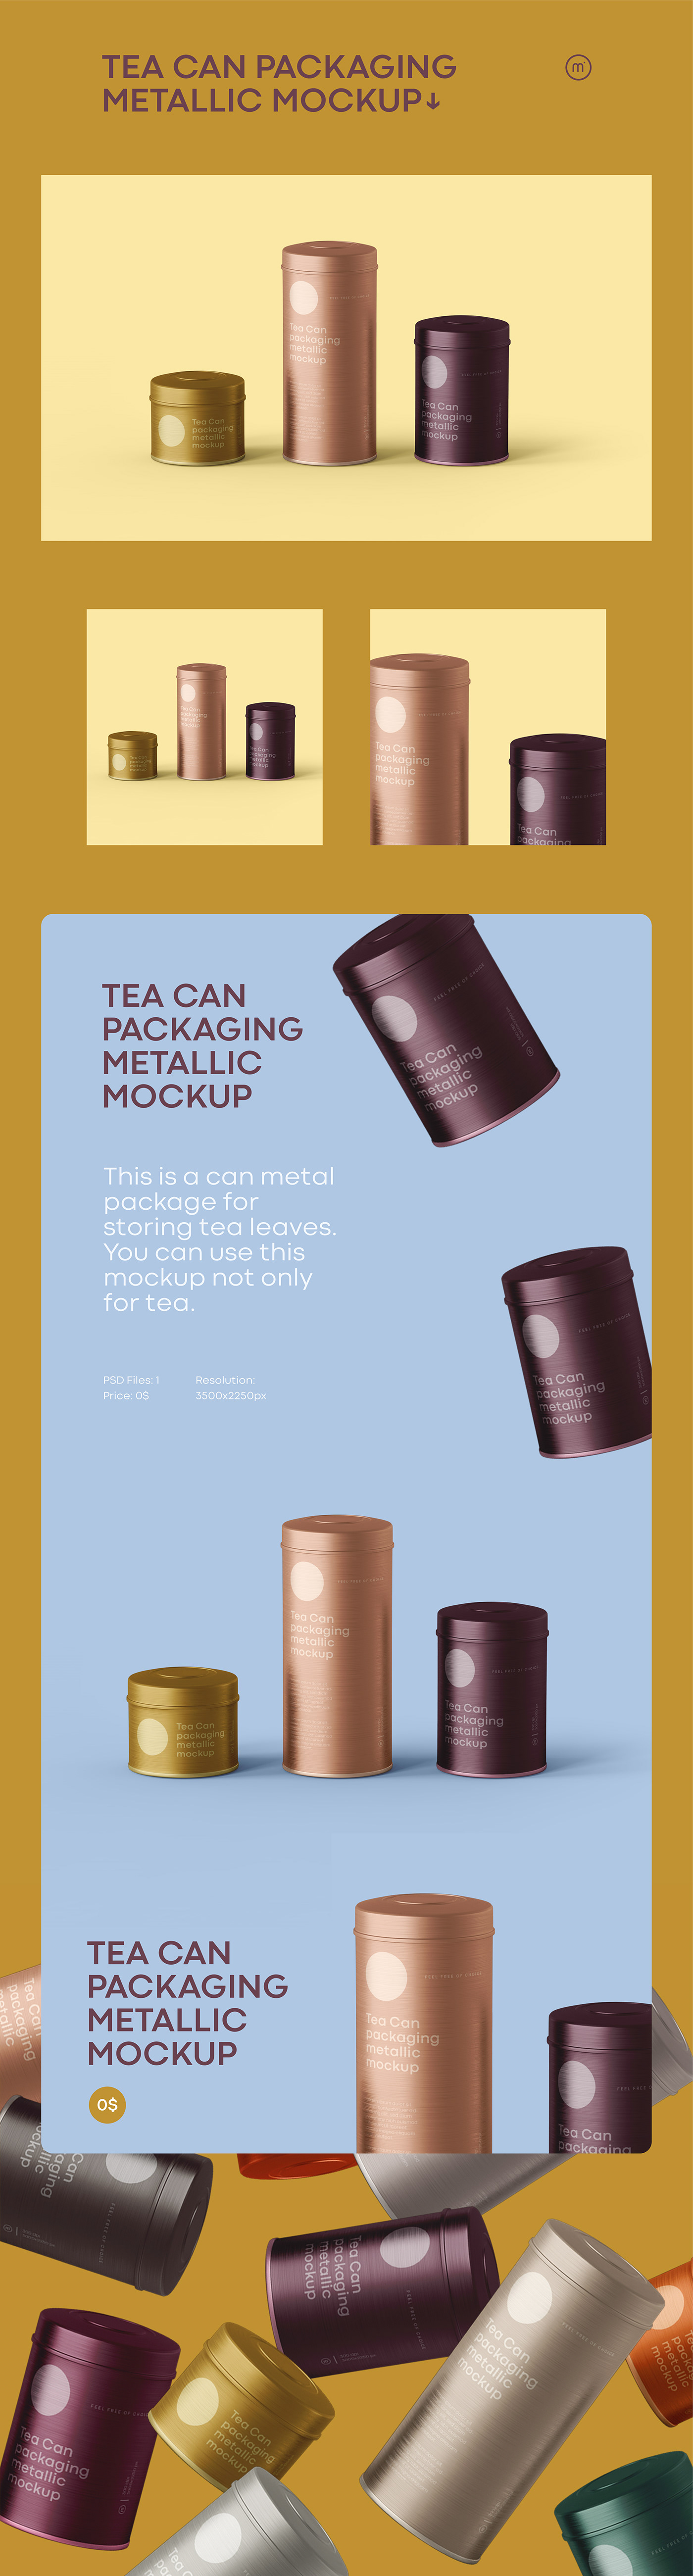 tea metal Packaging freemockup